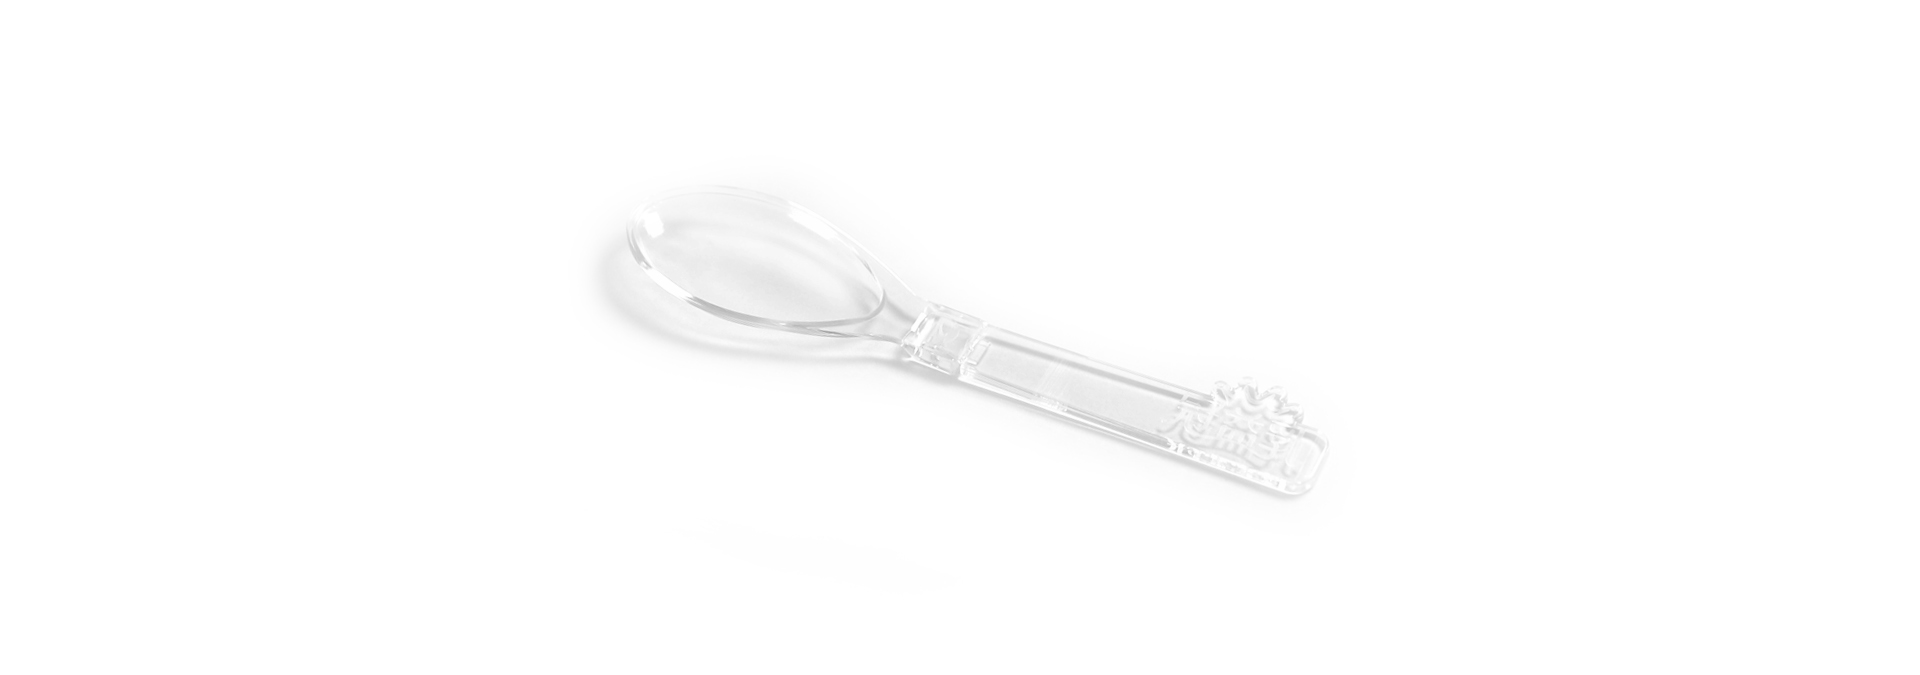 130 folding spoon